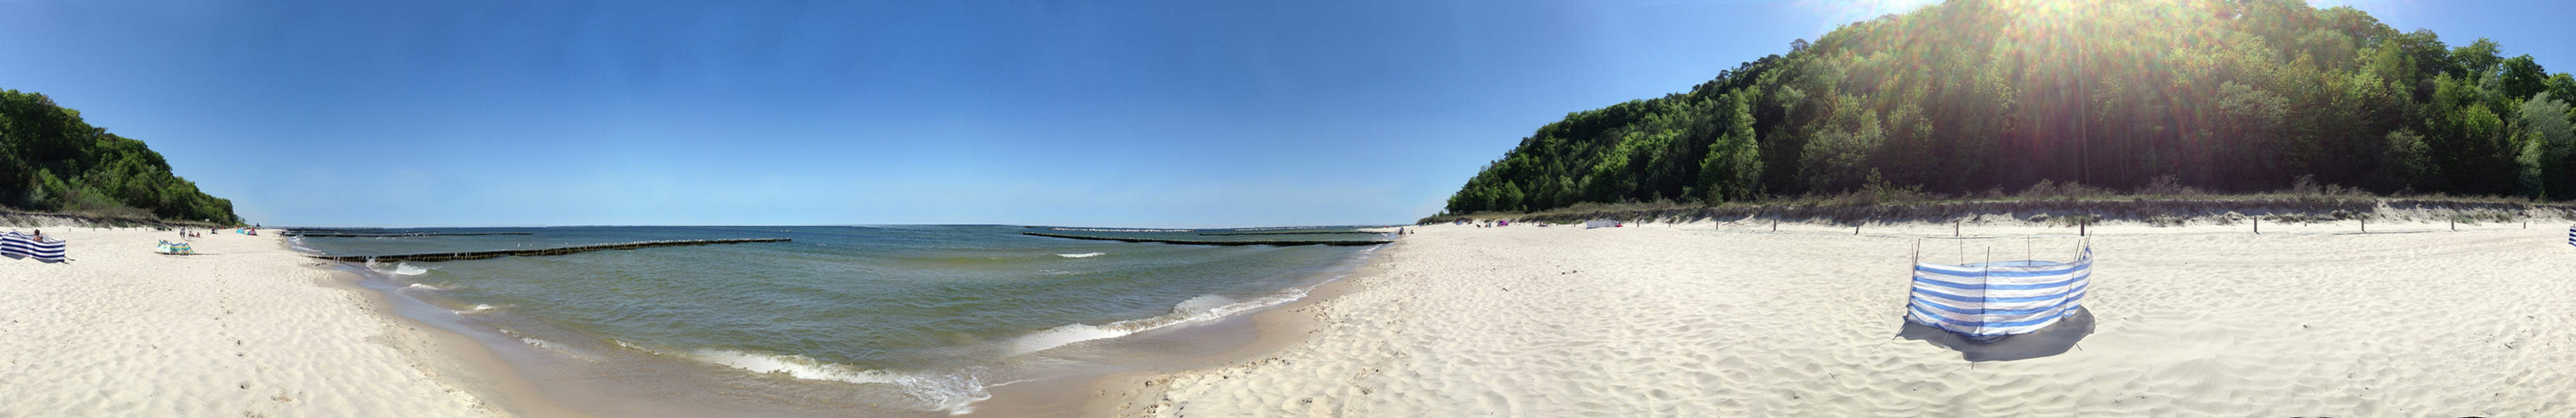 Breiter Sandstrand an der Ostsee: Bernsteinbad Koserow.